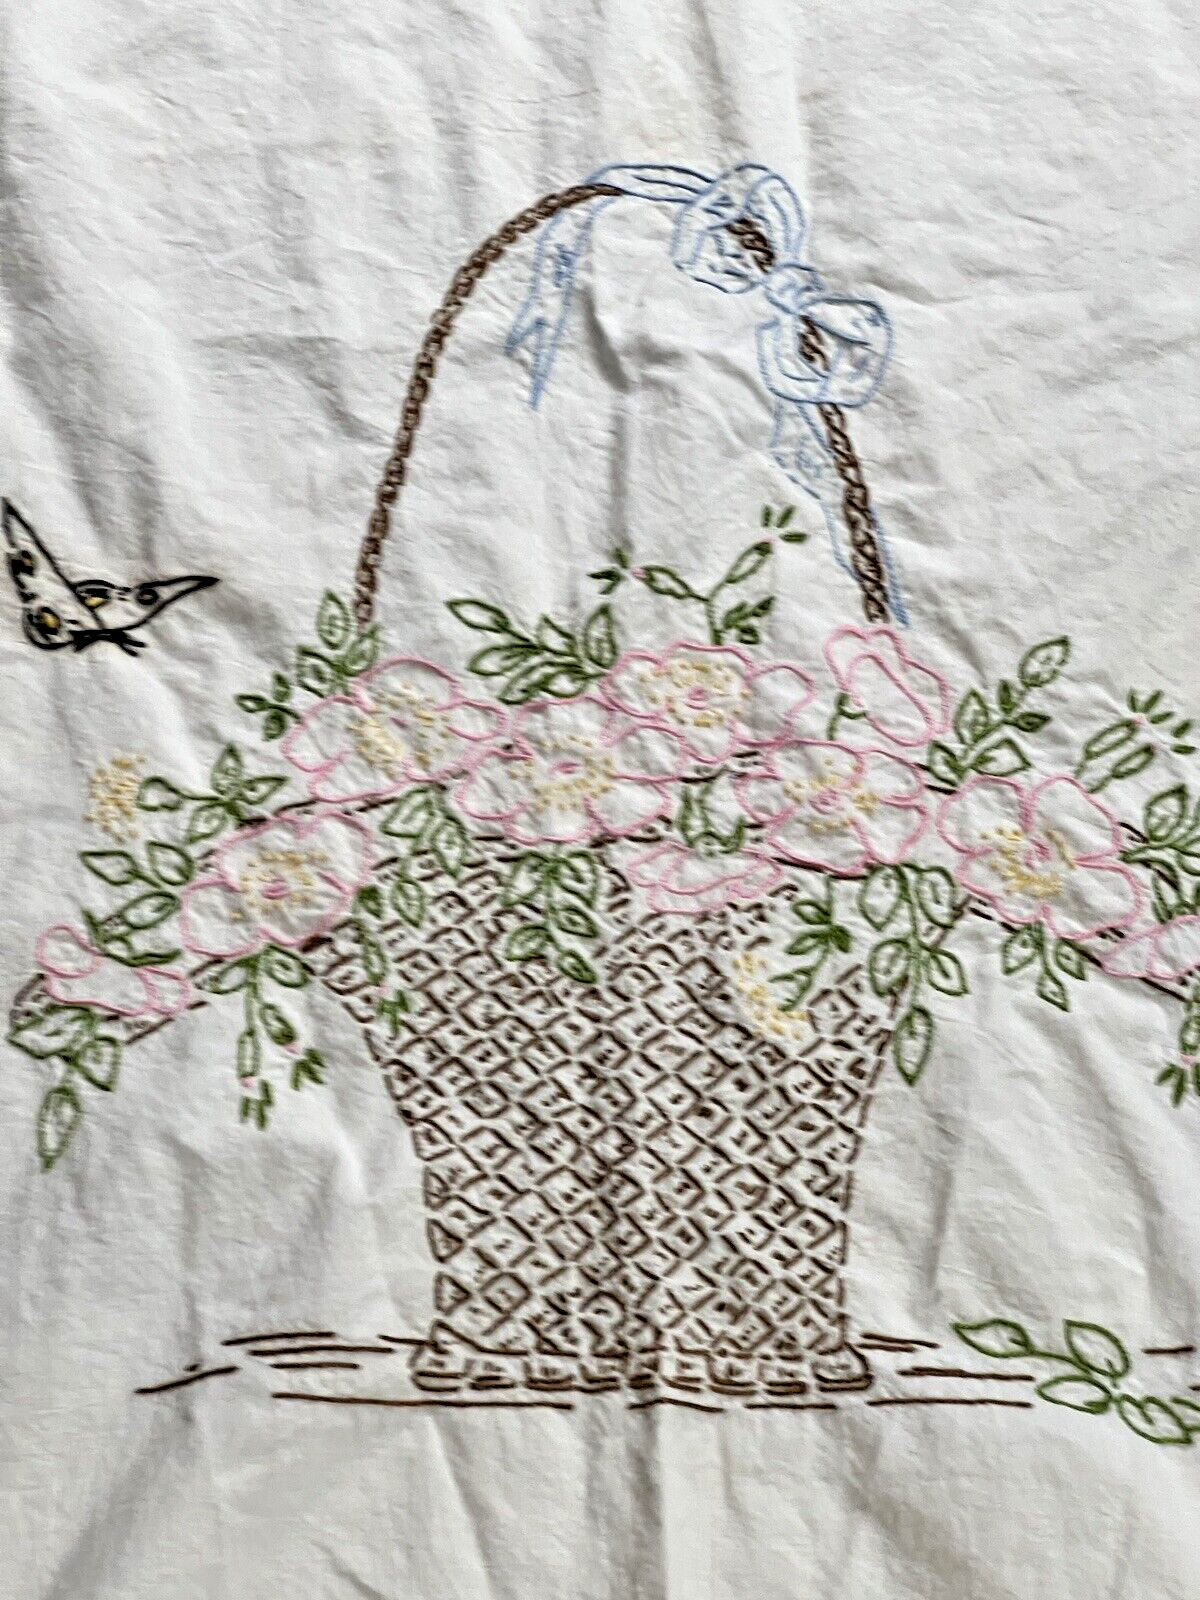 Vintage Embroidered Coverlet Flower Basket Bedspread 80x74 Cutter